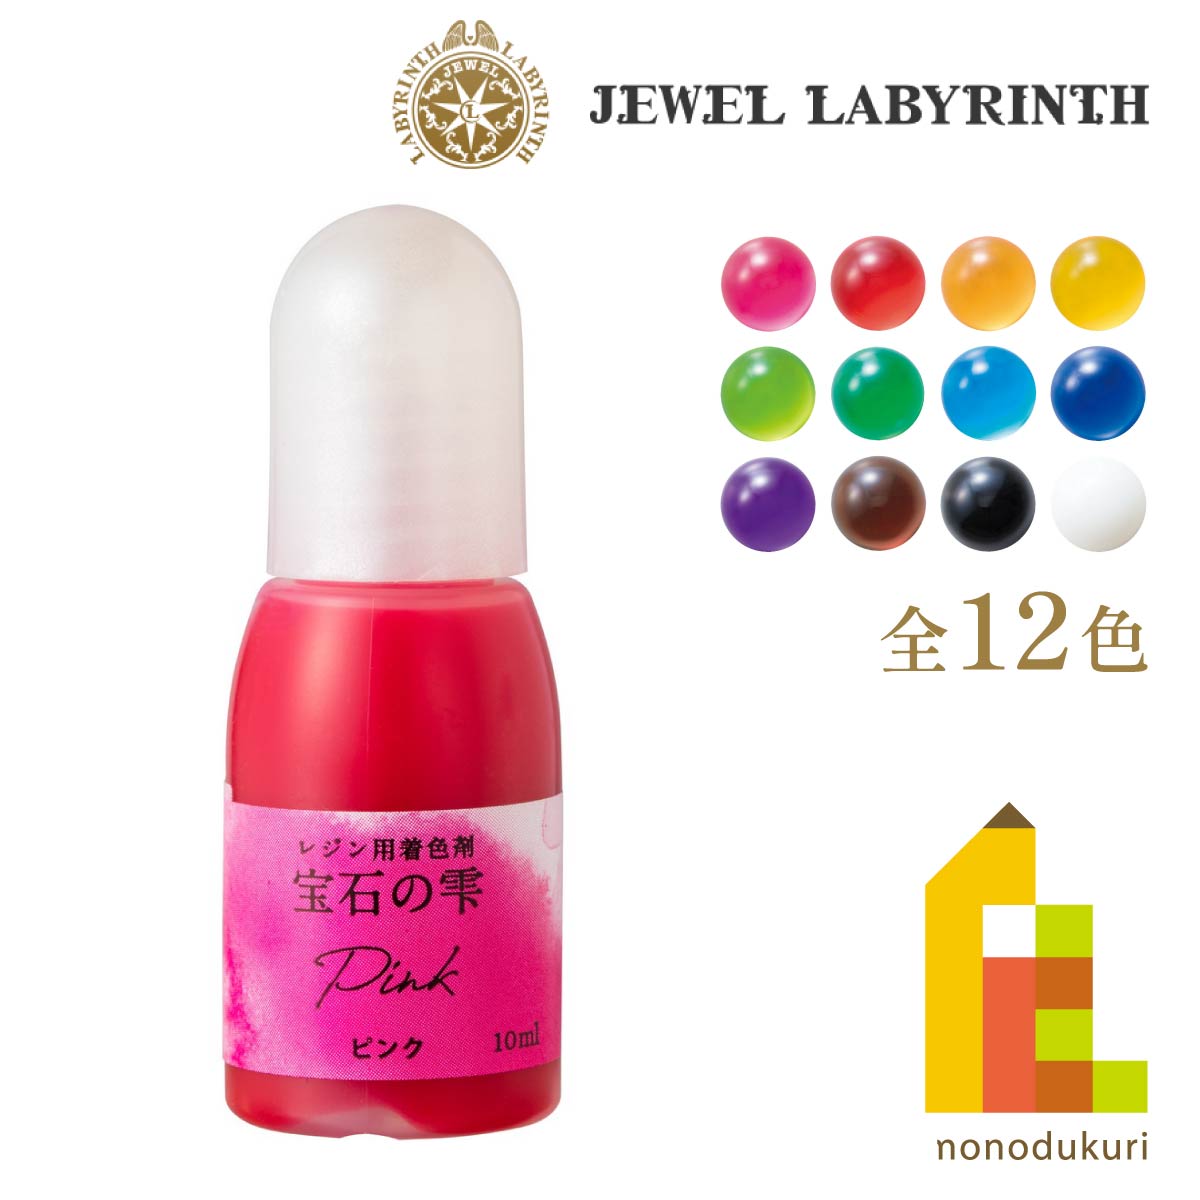 パジコ UVレジン用着色剤 宝石の雫 10ml ピンク 403034の商品画像